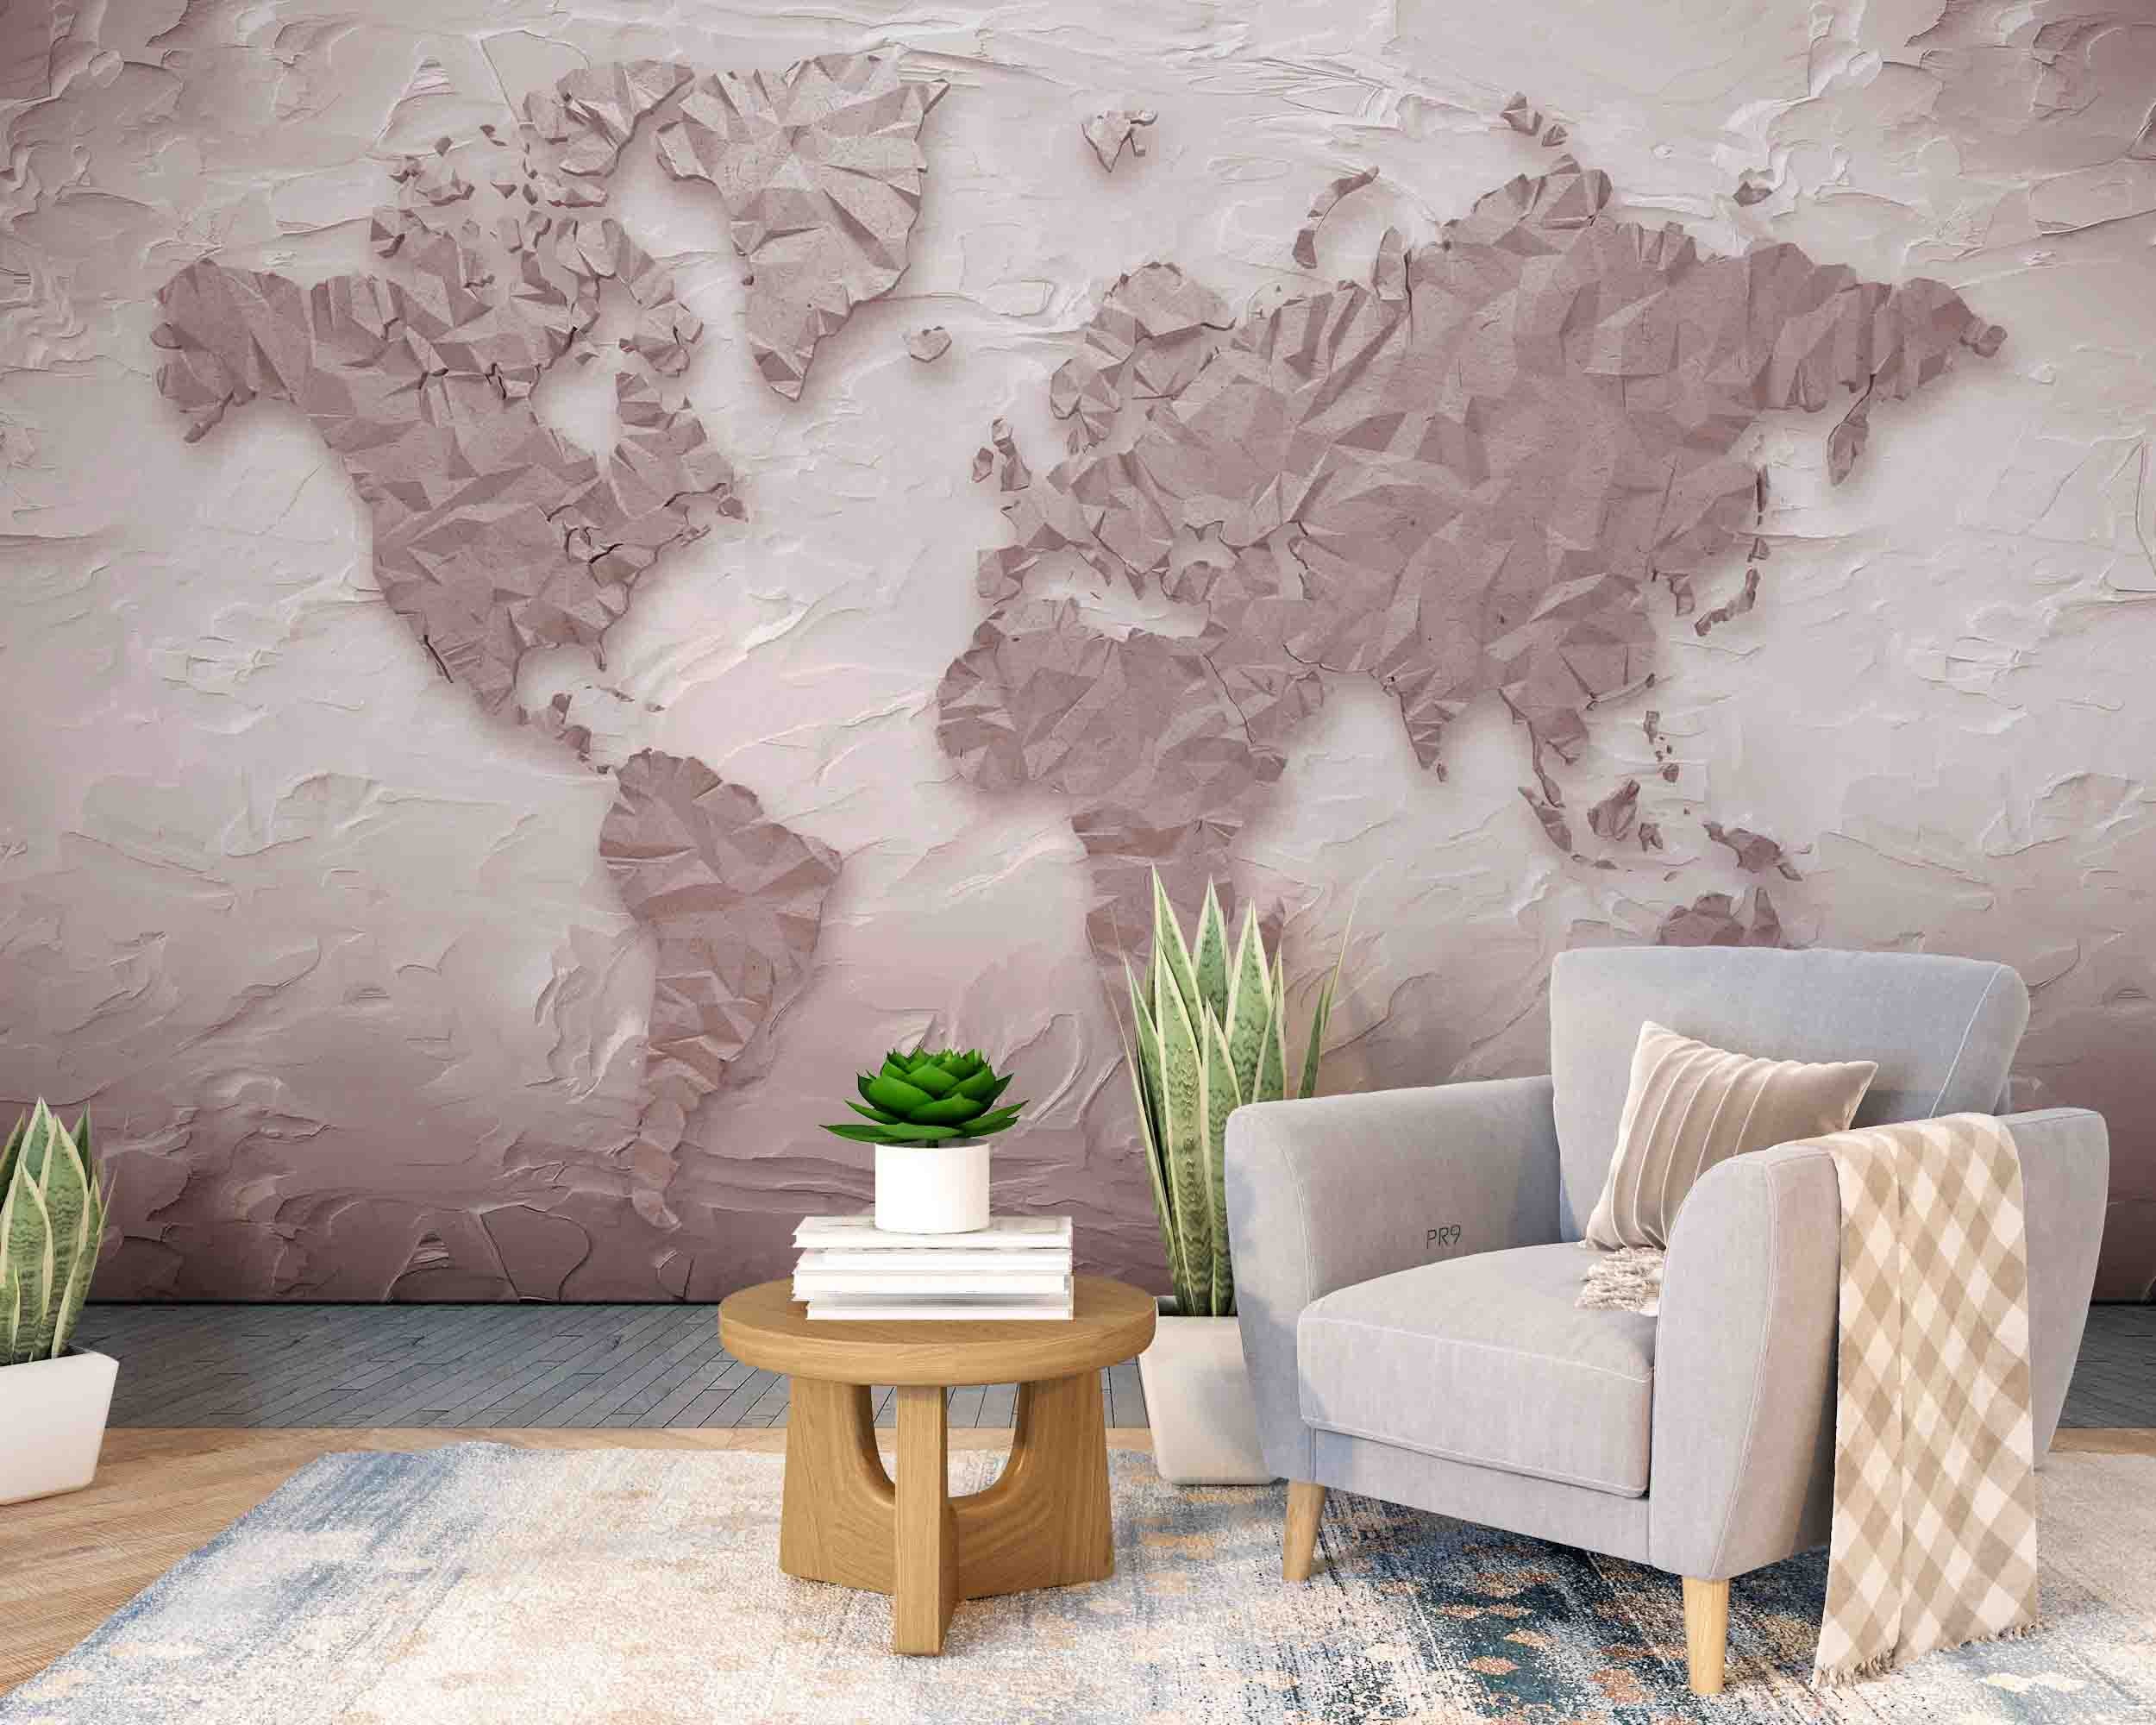 3D Abstract Retro World Map Wall Mural Wallpaper GD 4676- Jess Art Decoration